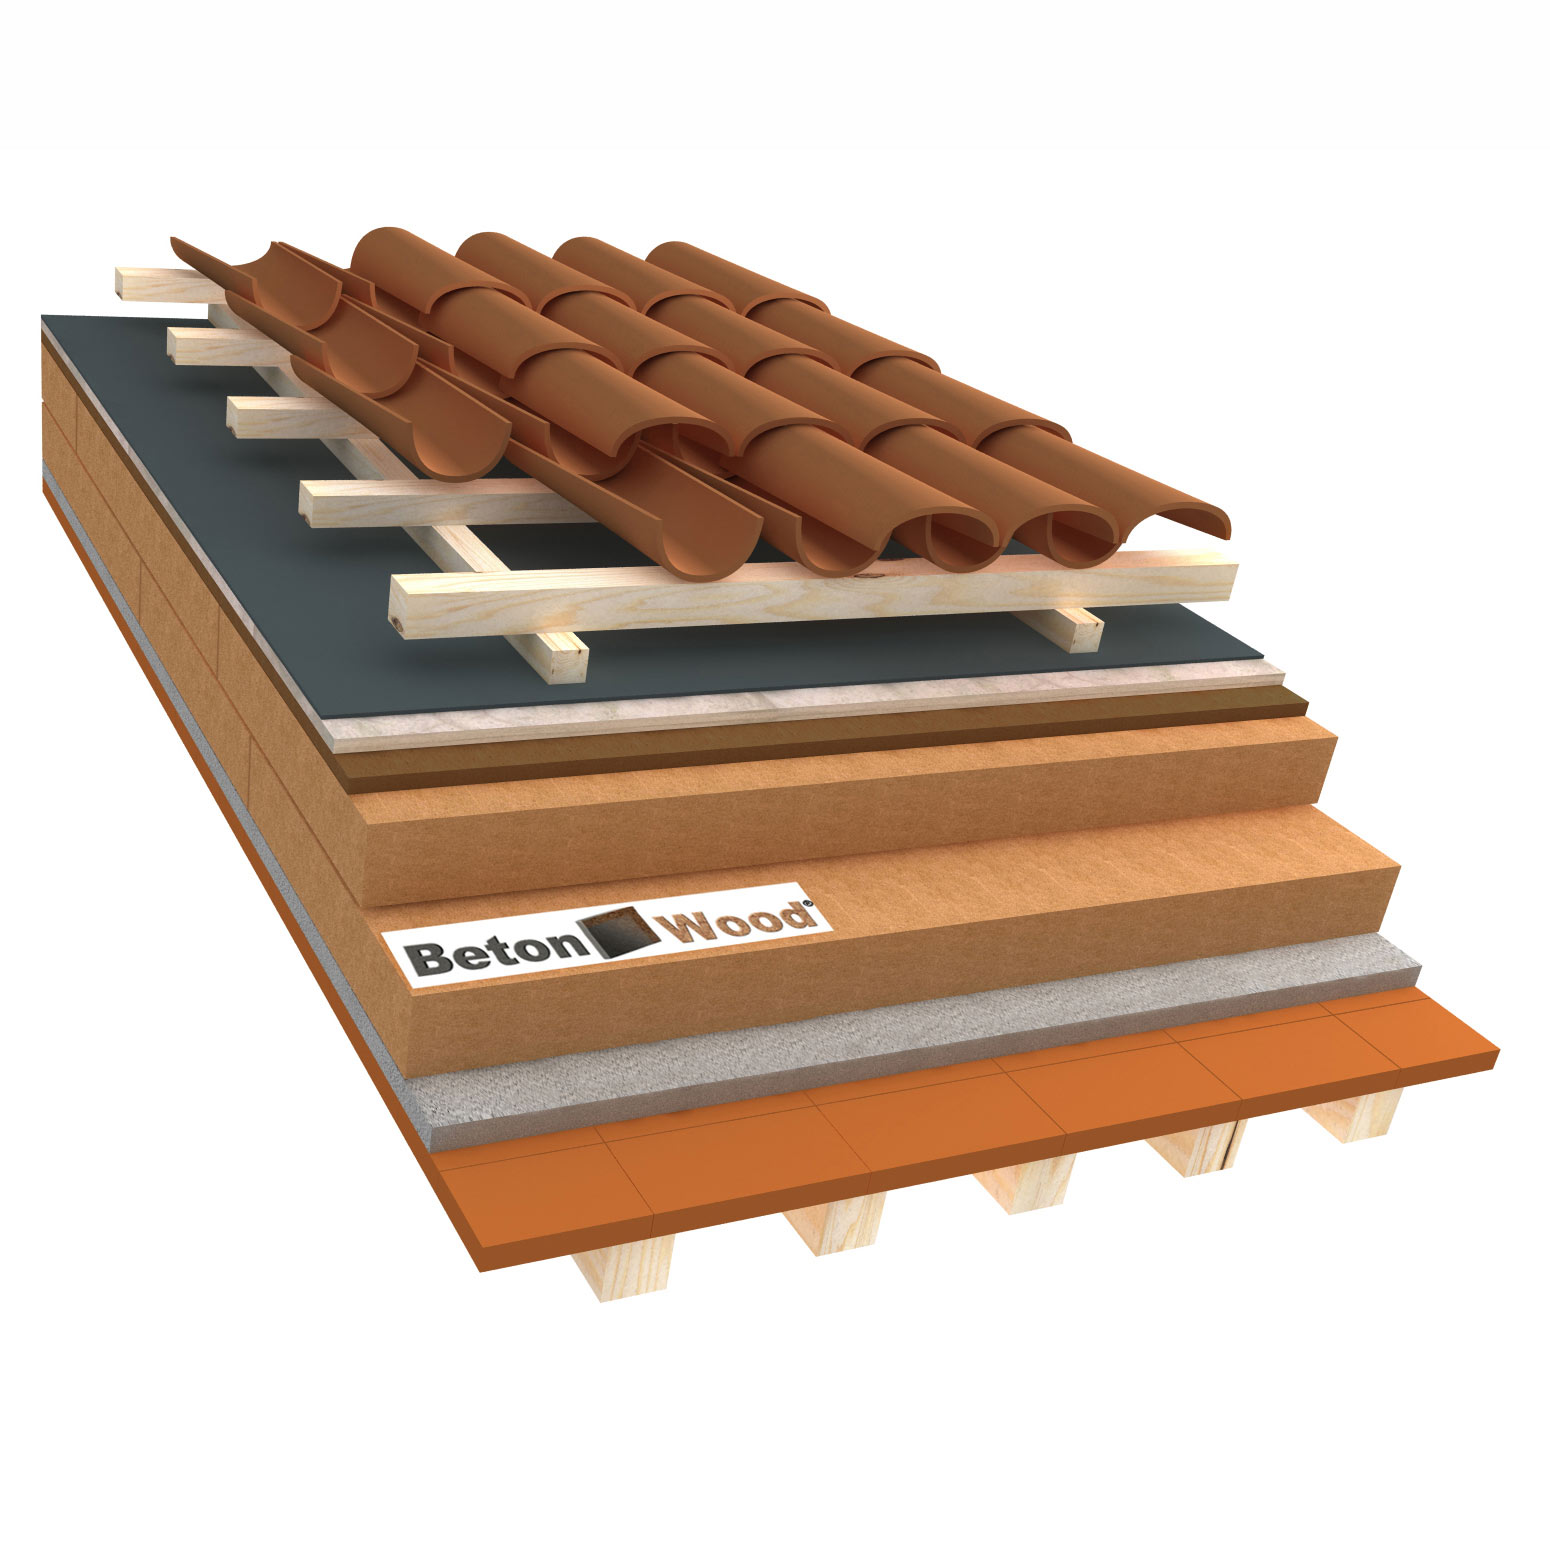 Sistema tetto E fibra di legno therm, bitumfiber e cementolegno